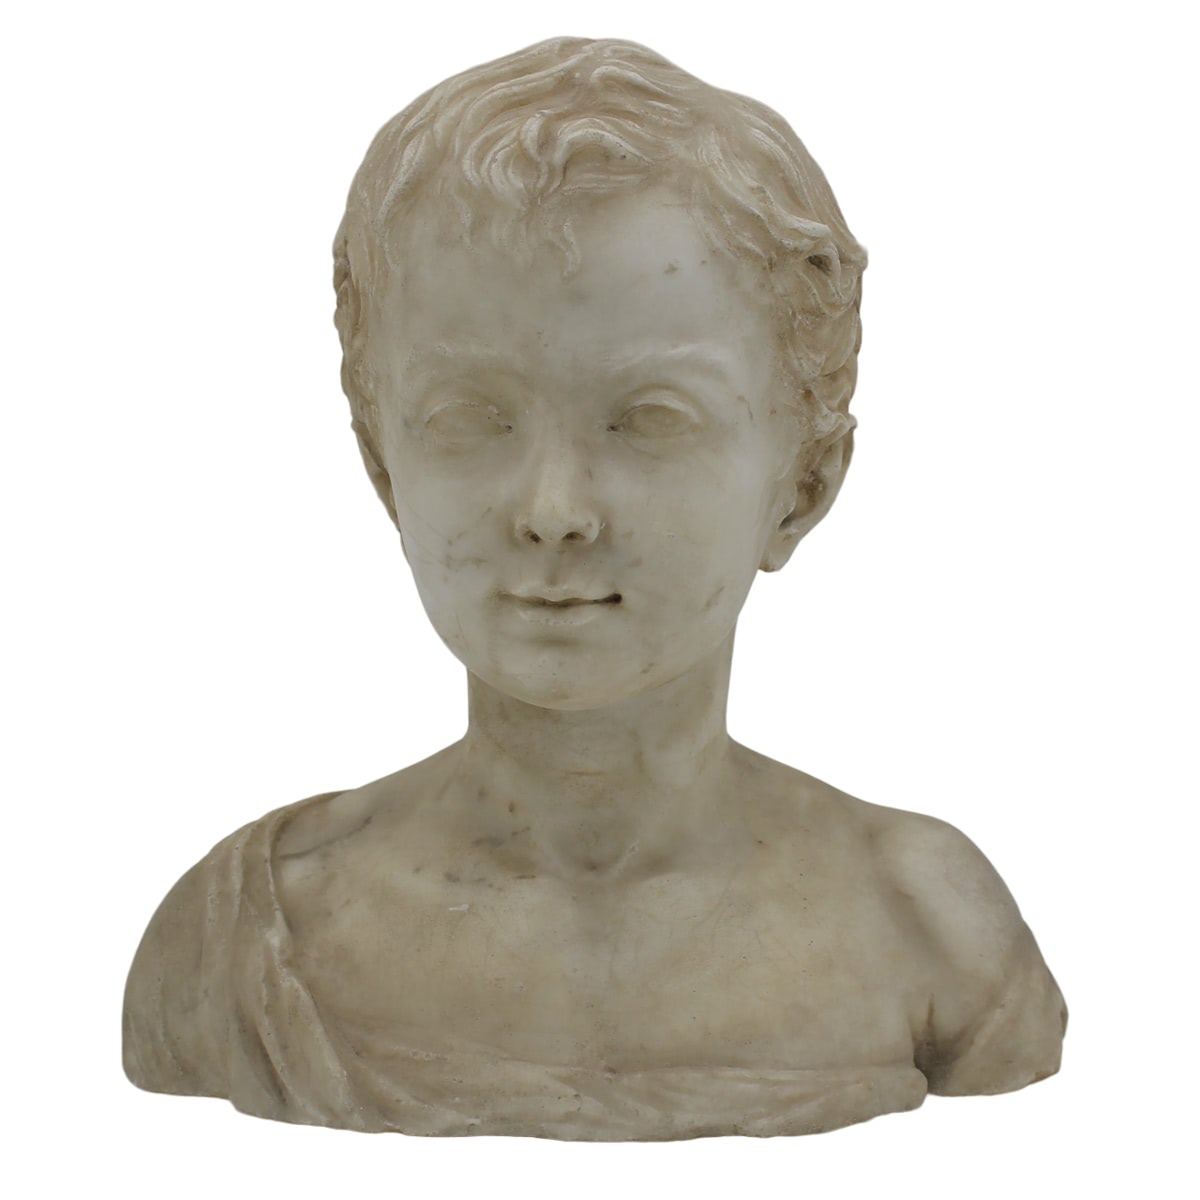 Mezzo busto di bimbo - Half-length portrait of a child